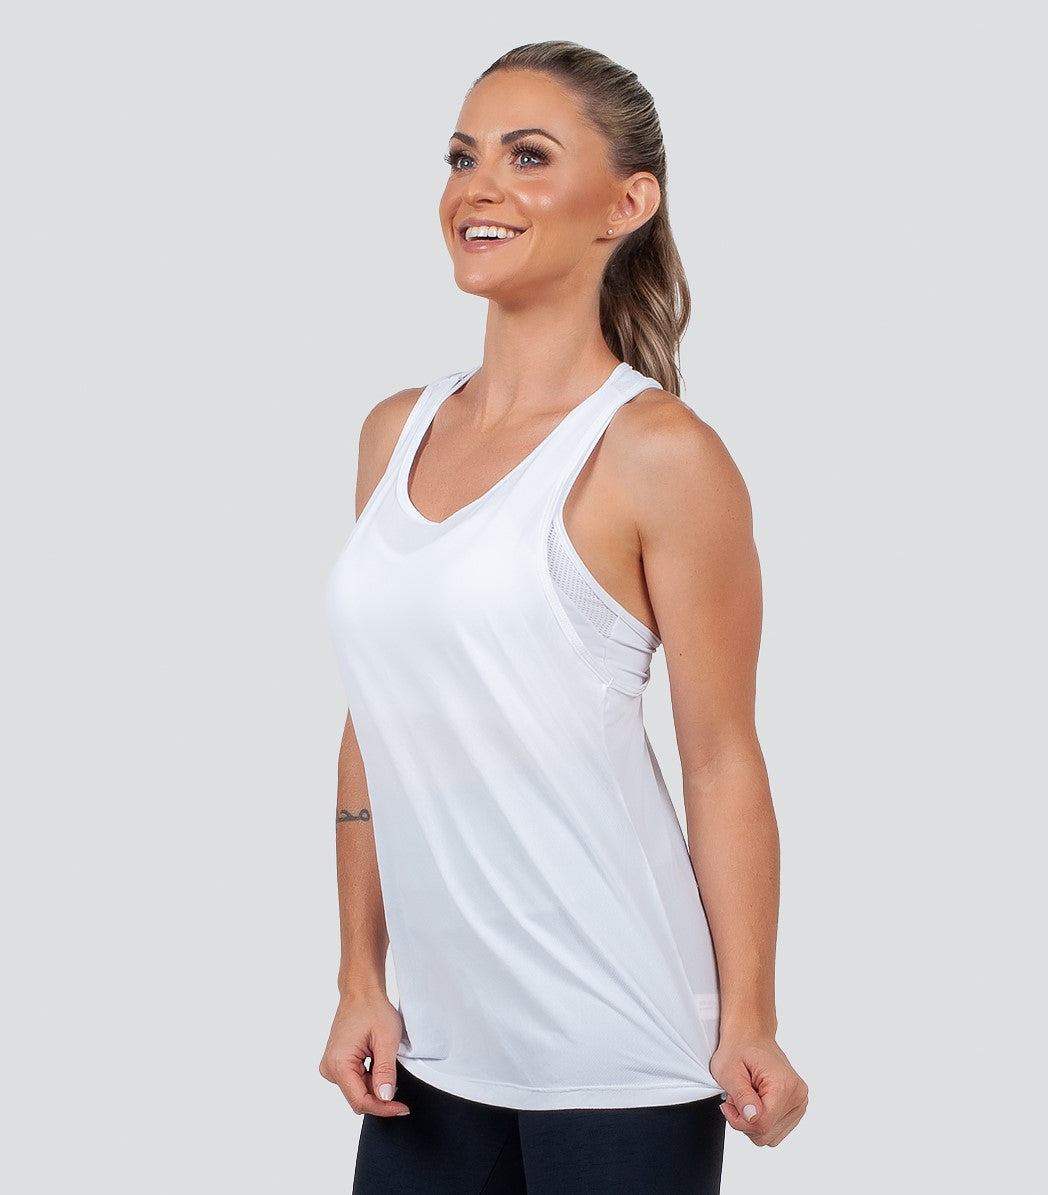 White Women's Workout Net Tank Top